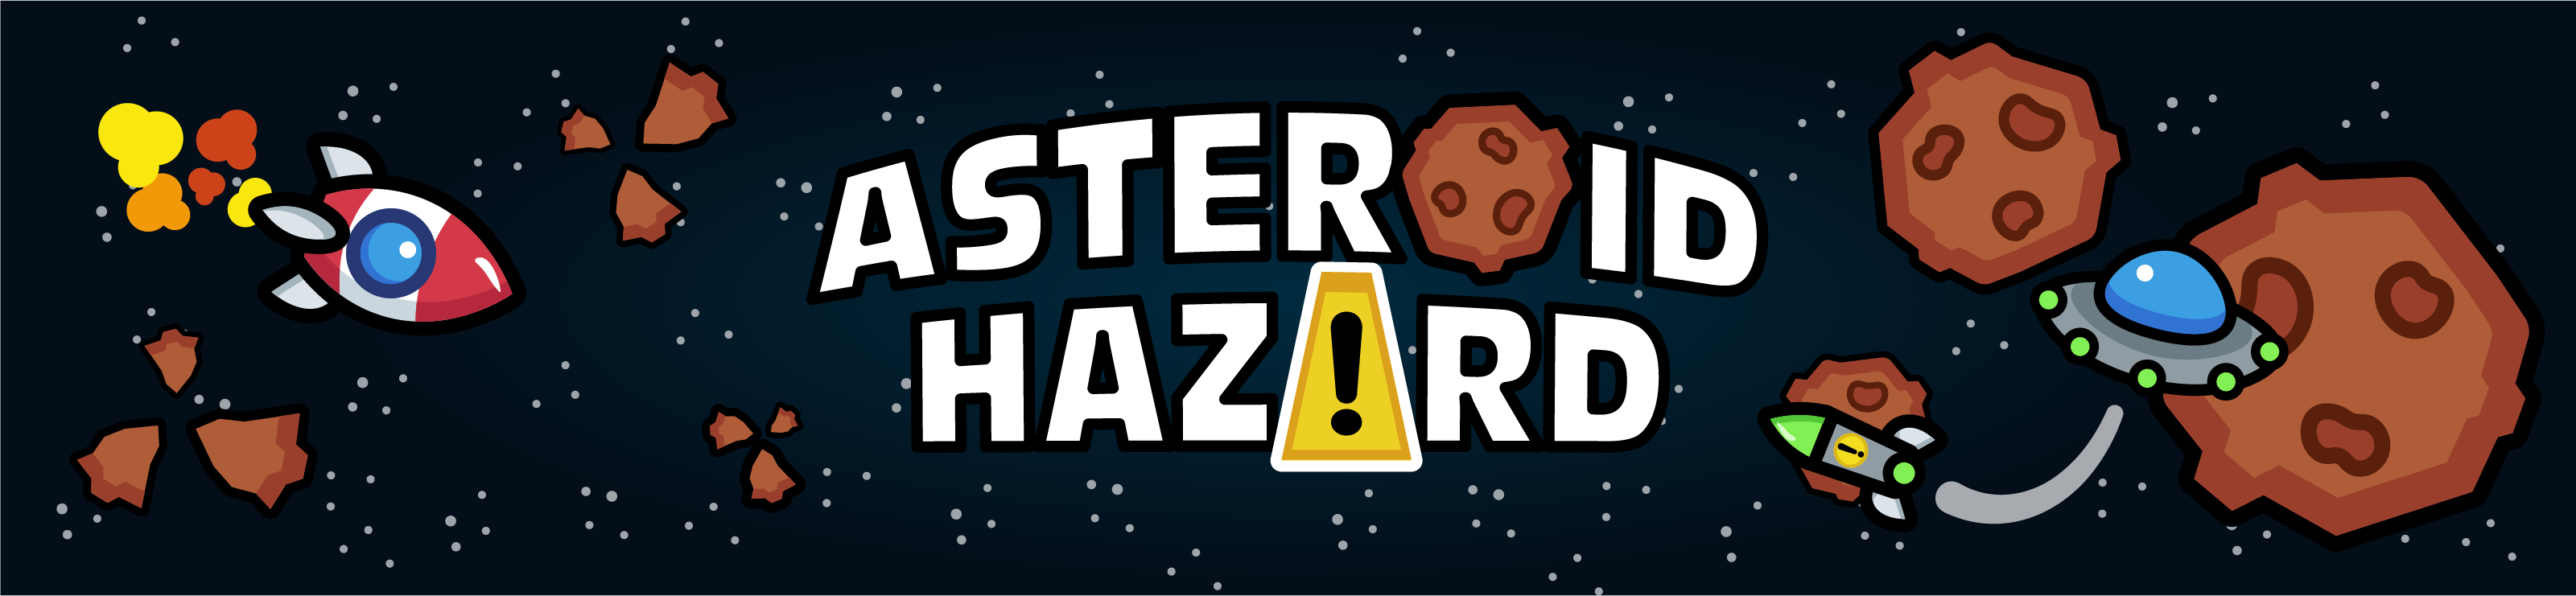 Asteroid Hazard